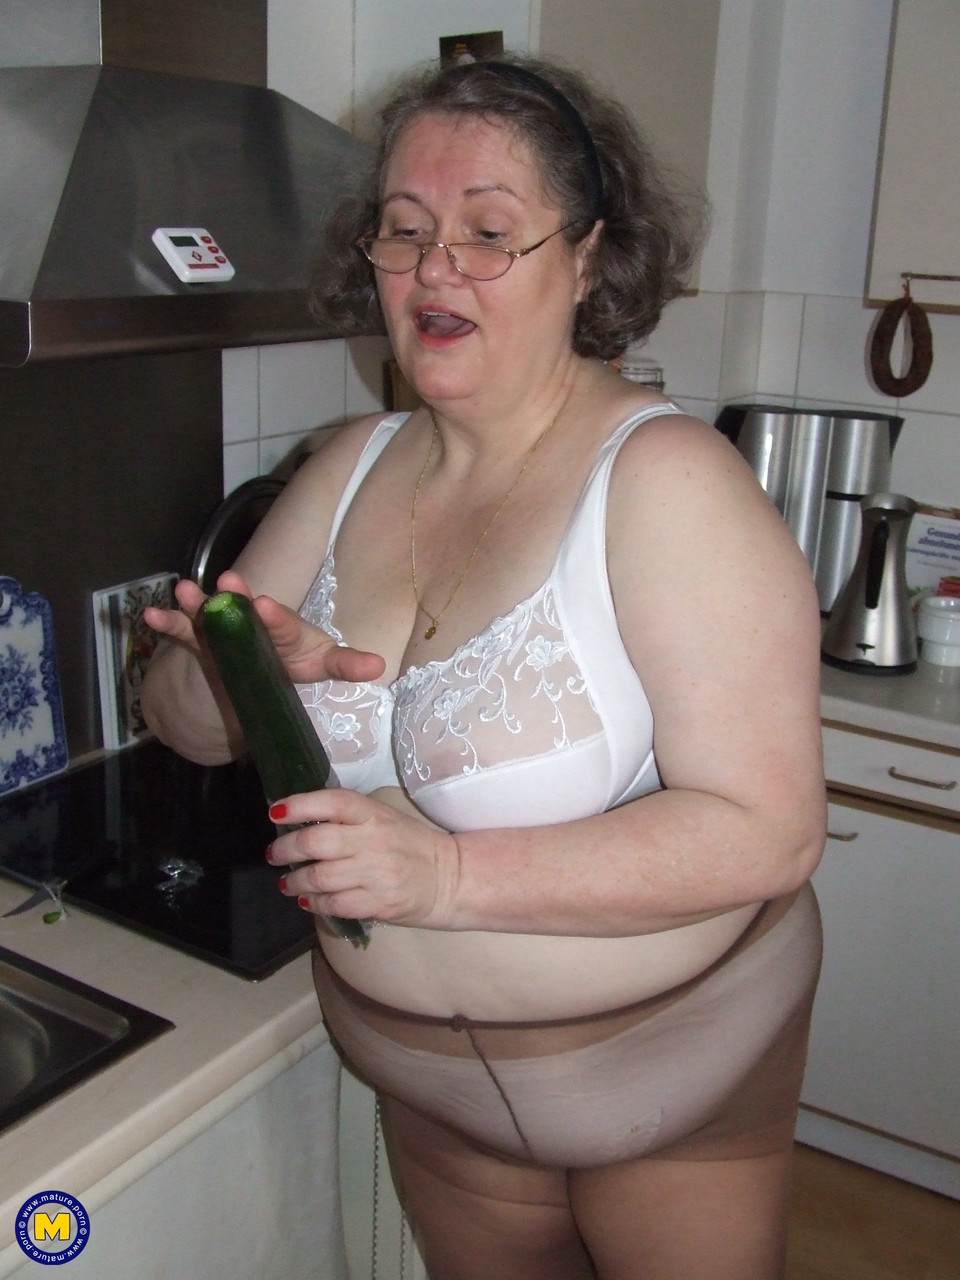 Fat mature housewife Birgid masturbates with a cucumber in the kitchen porno foto #423883219 | Mature NL Pics, Birgid, Granny, mobiele porno